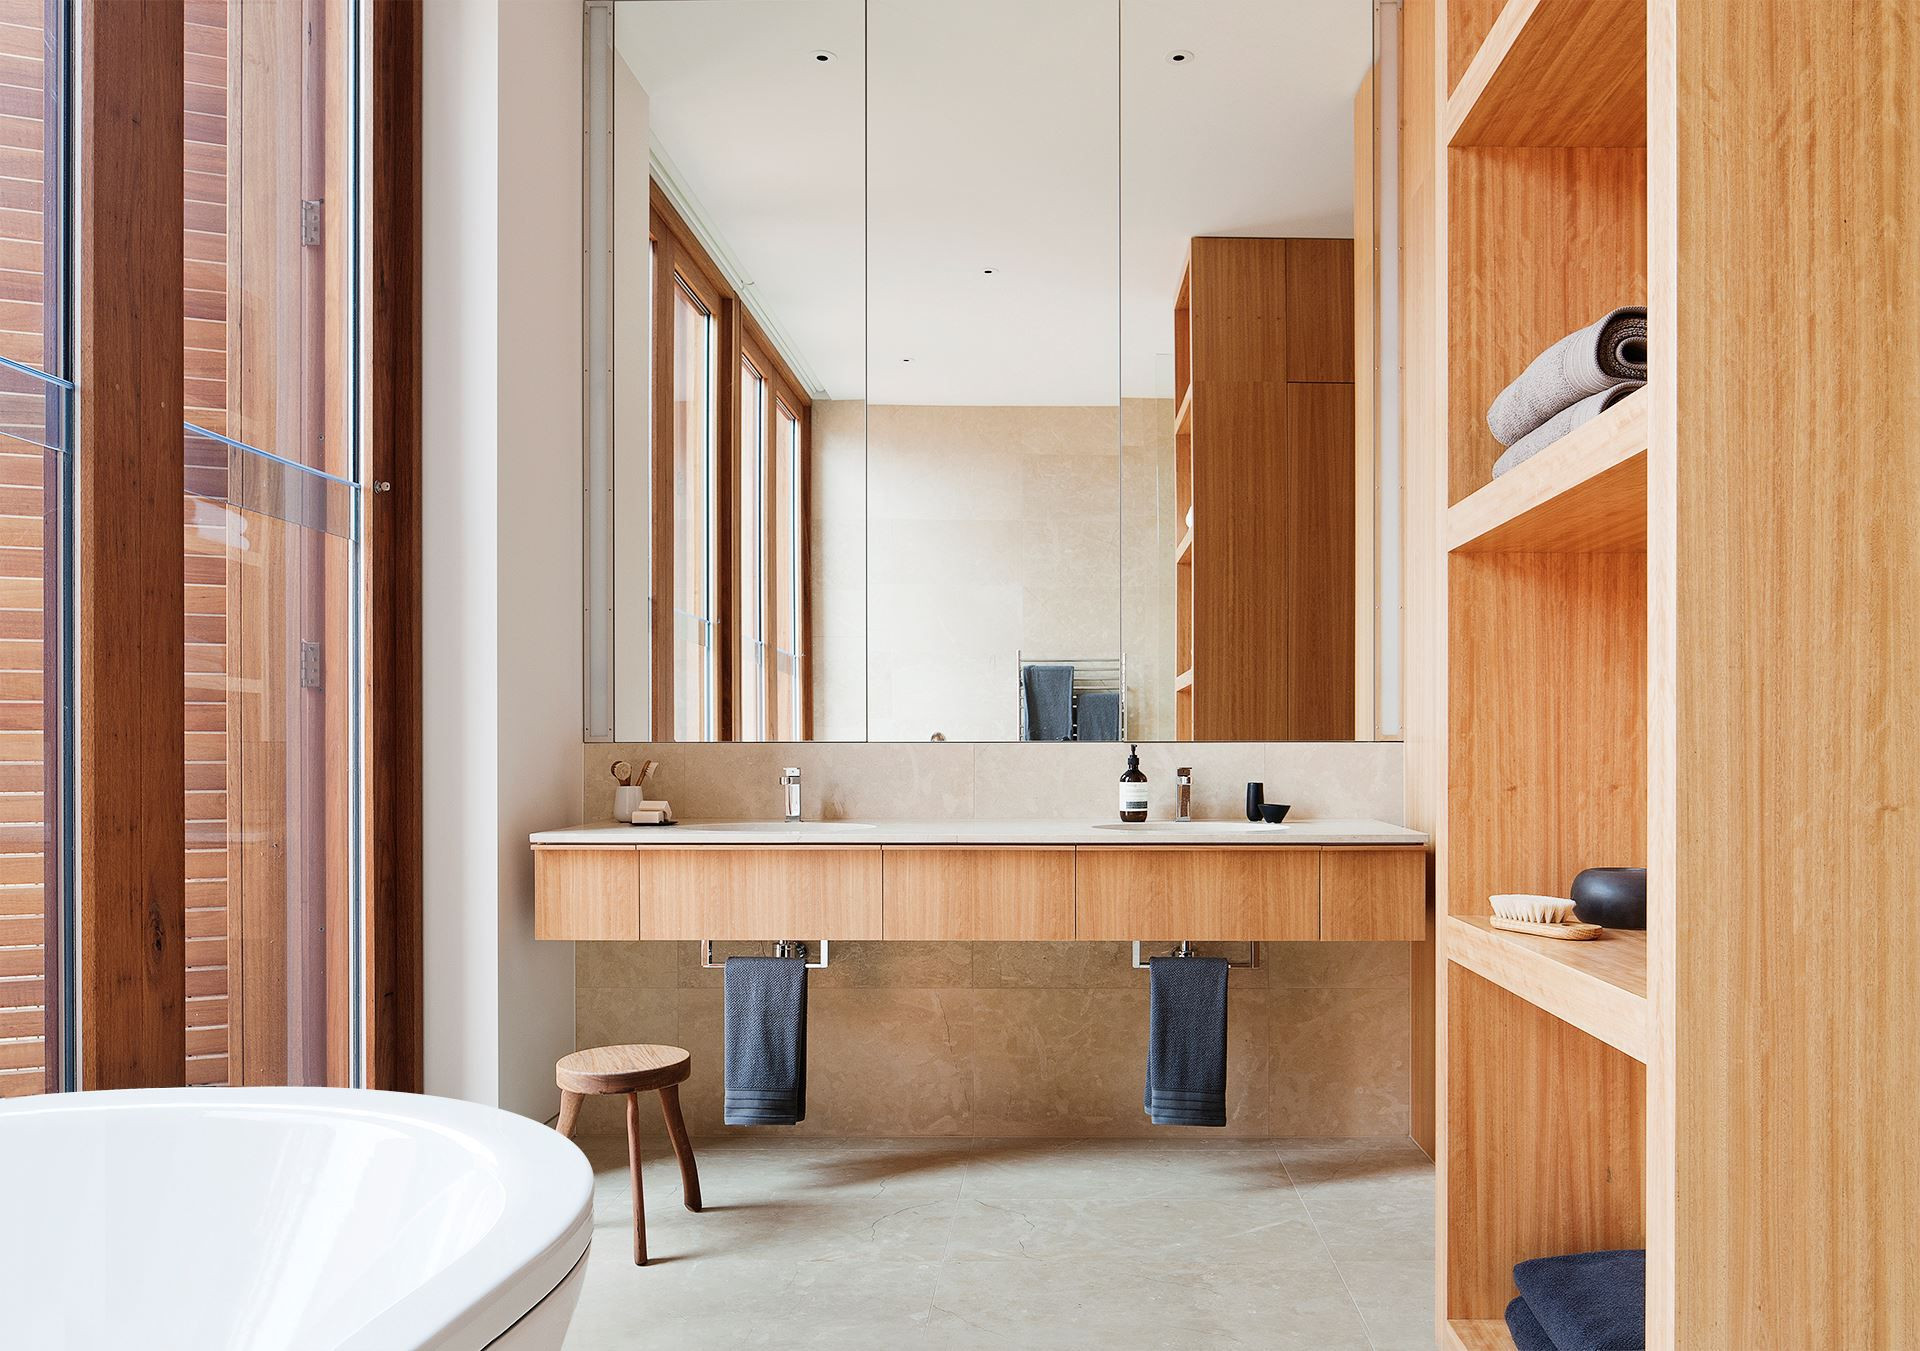 Bathroom Decor Inspiration
 50 Inspiring Bathroom Design Ideas